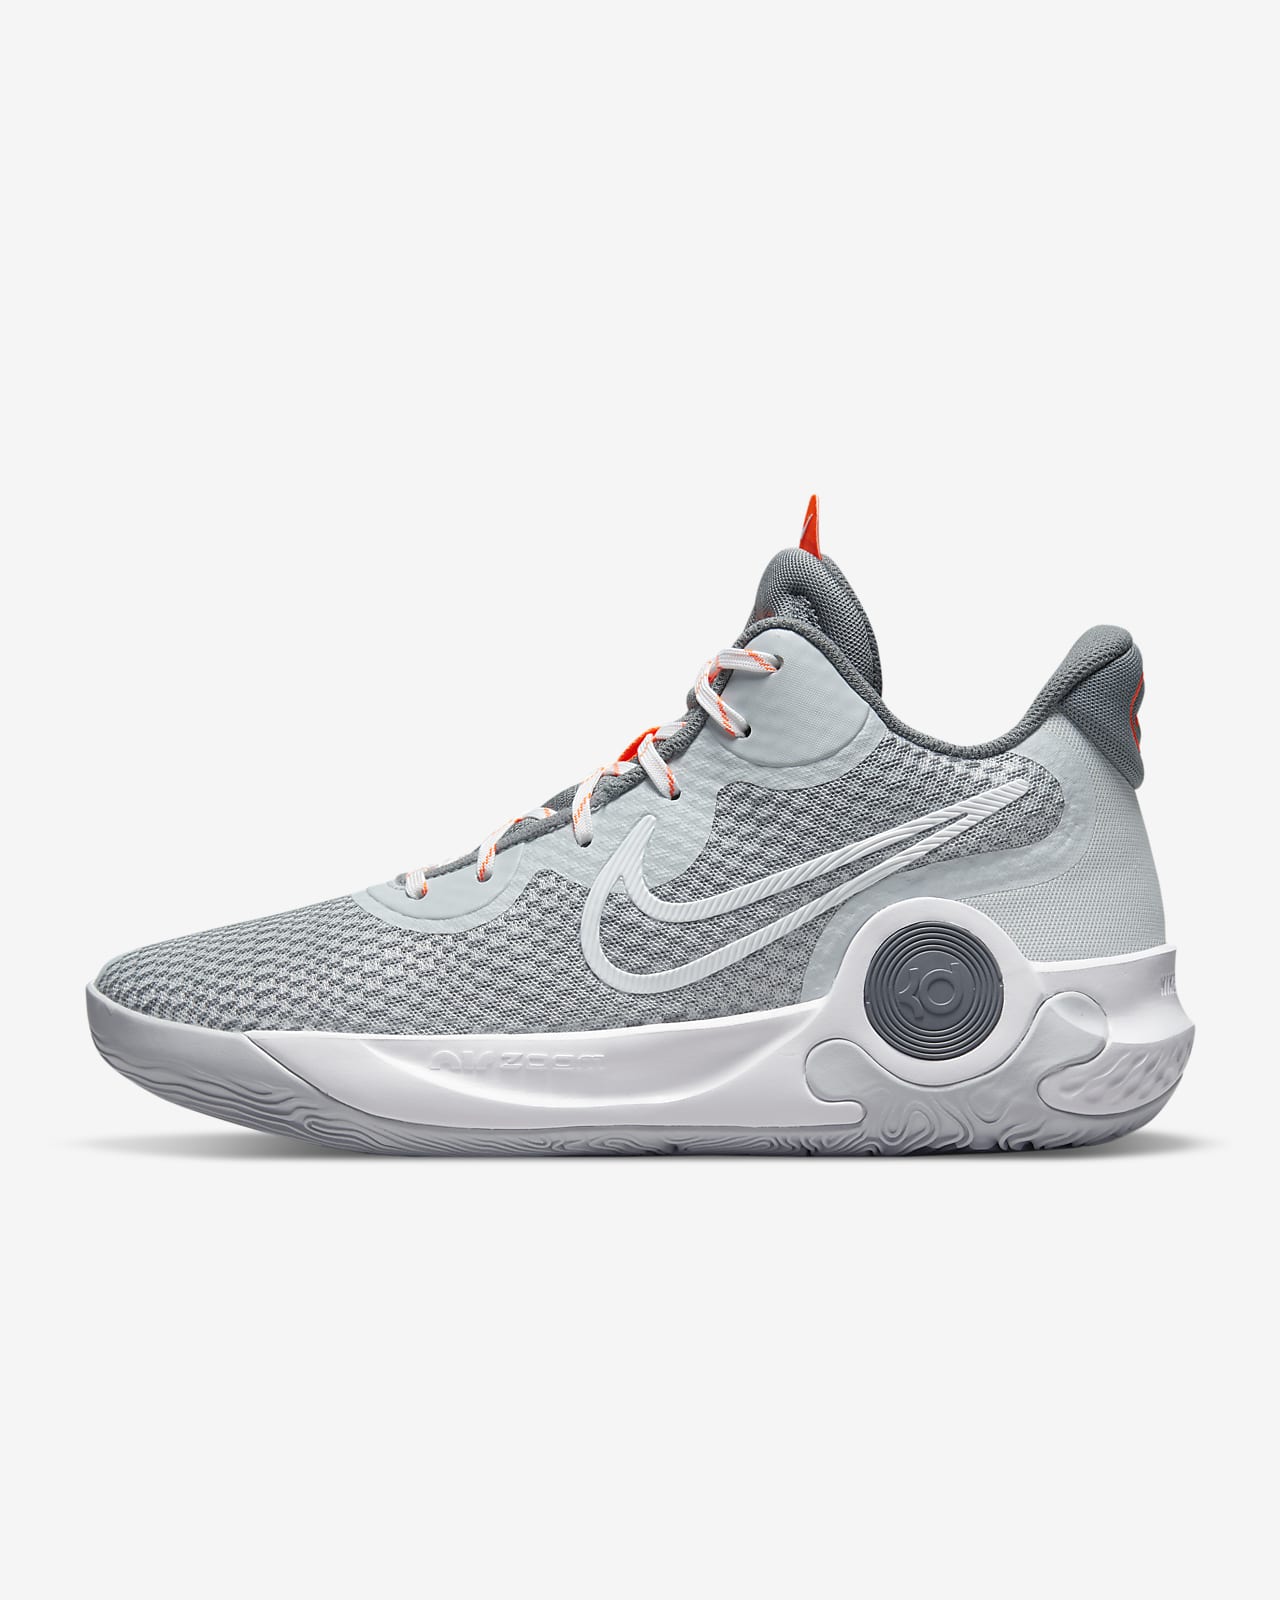 KD Trey 5 IX Basketball Shoe. Nike AU